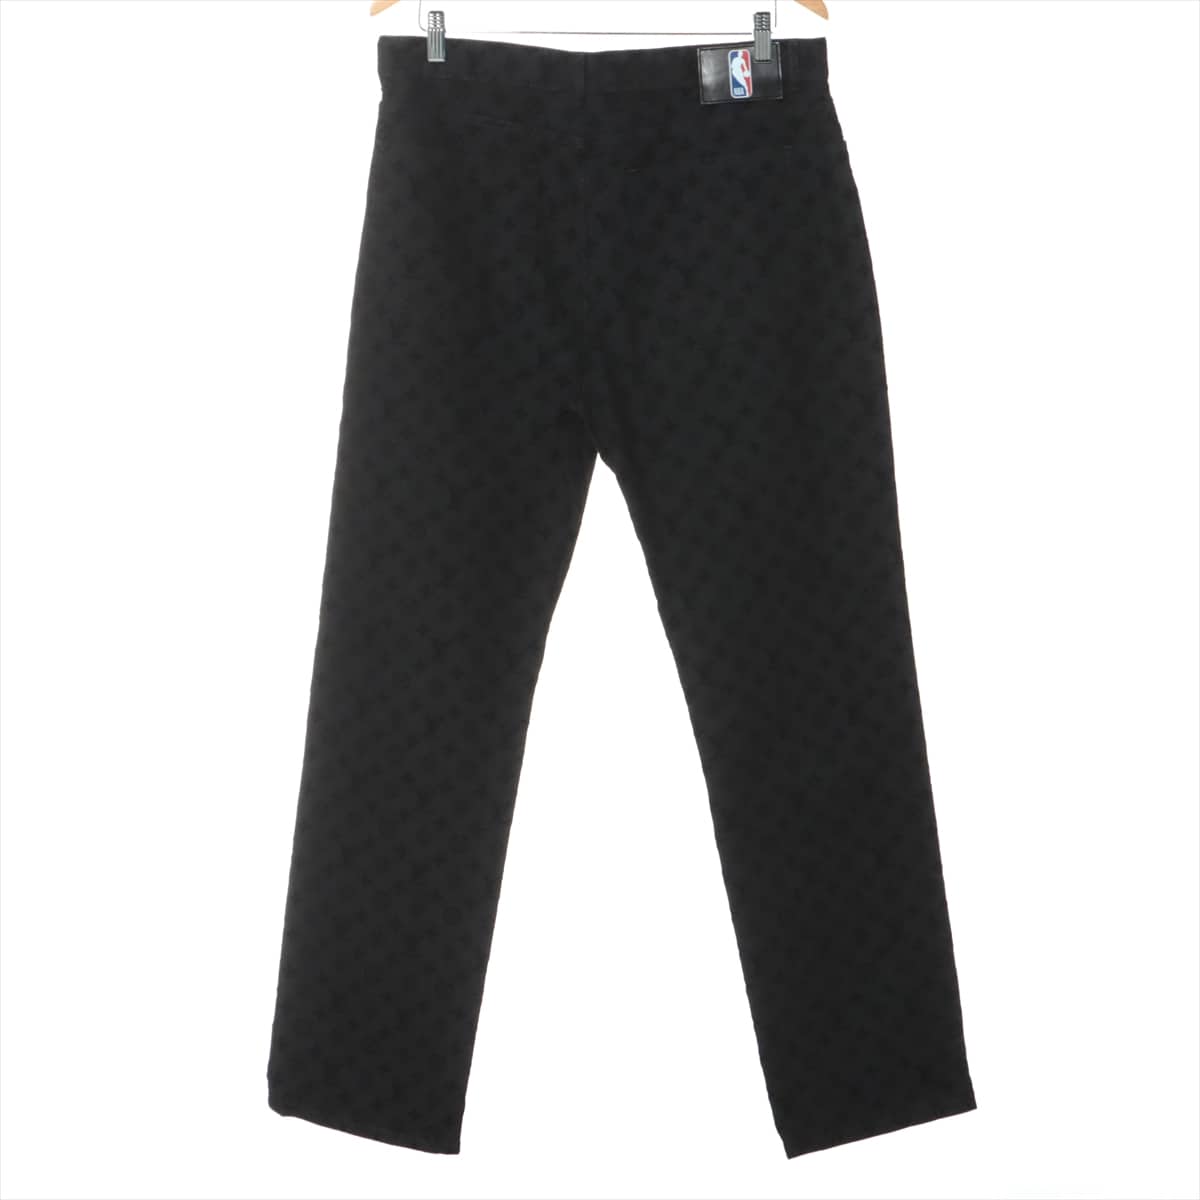 Louis Vuitton x NBA Cotton Denim pants 34 Men's Black  HKD05WZNY Monogram